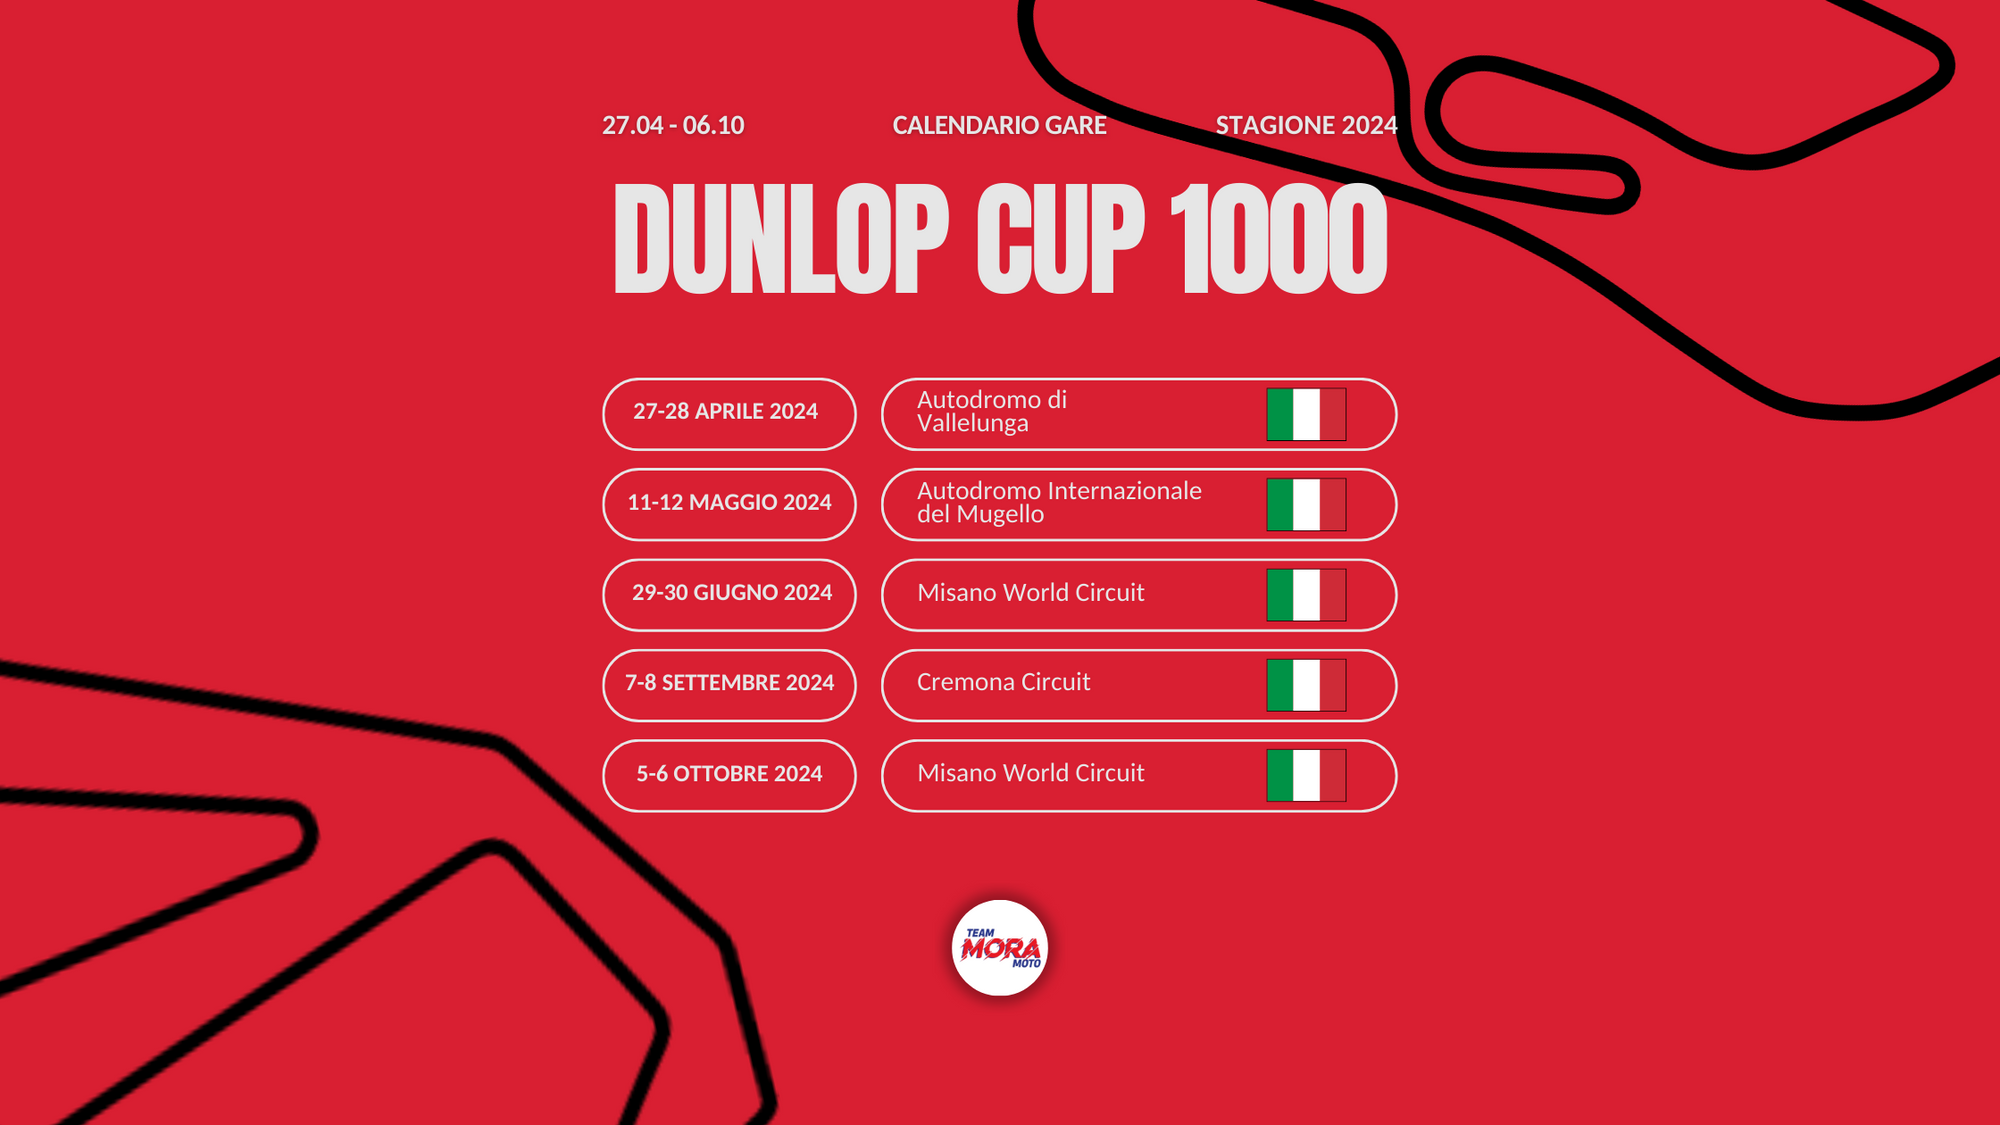 CALENDARIO DUNLOP CUP 1000 2024 👊🏻